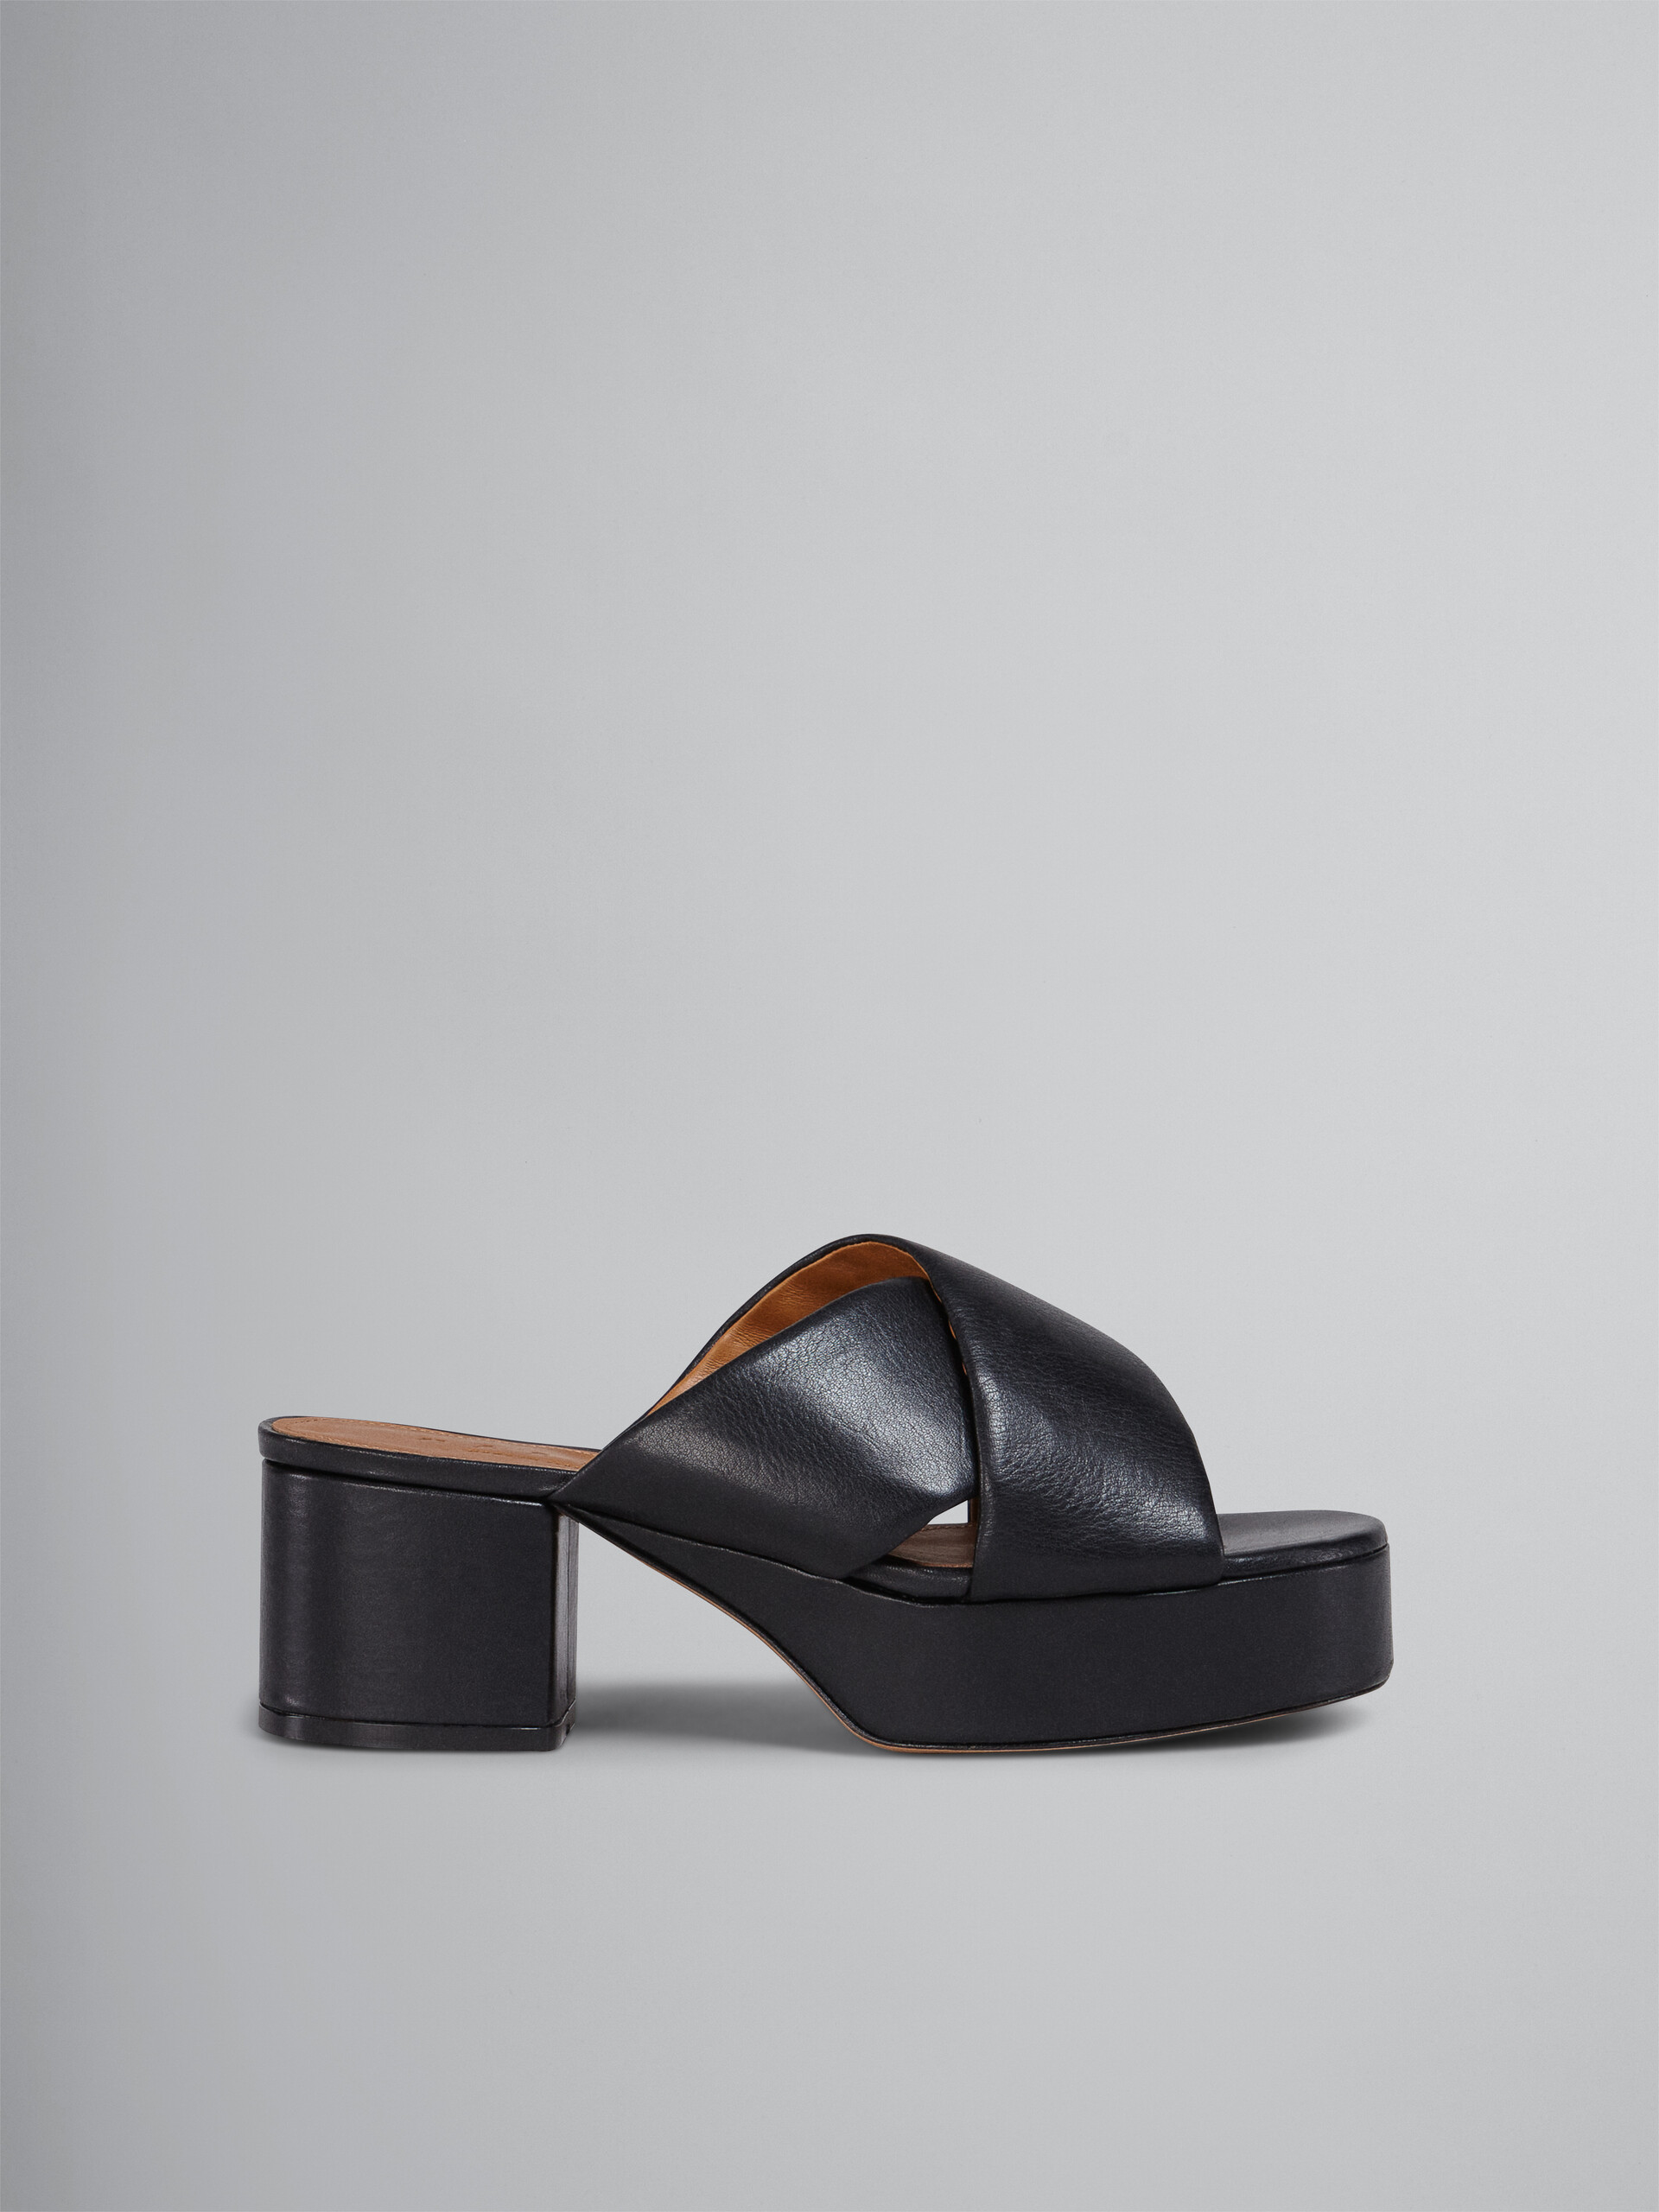 Black vegetable-tanned leather sandal - Sandals - Image 1